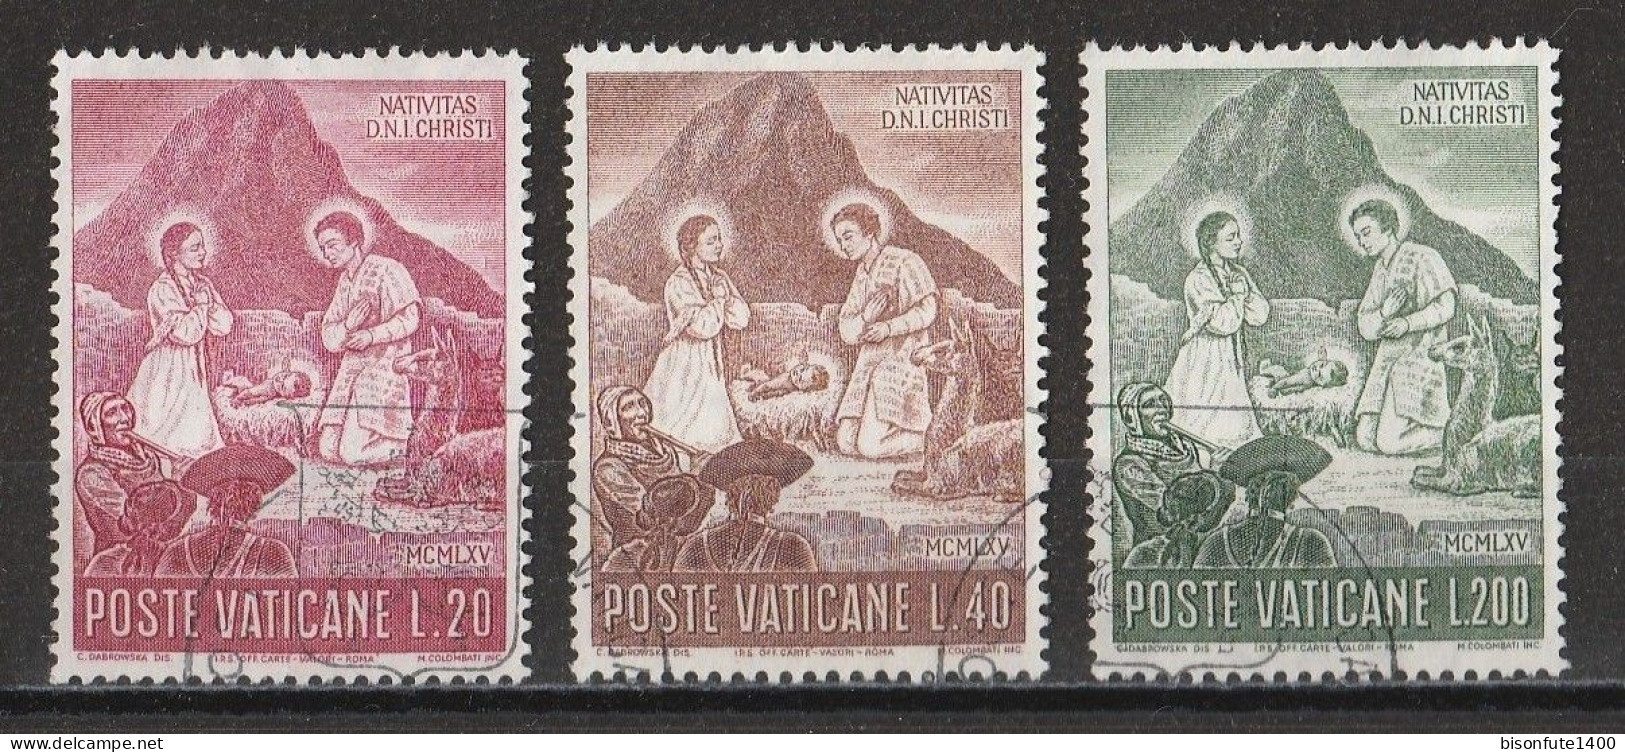 Vatican 1965 : Timbres Yvert & Tellier N° 432 - 433 - 434 - 435 - 436 - 437 - 438 - 439 Et 440 Oblitérés. - Oblitérés